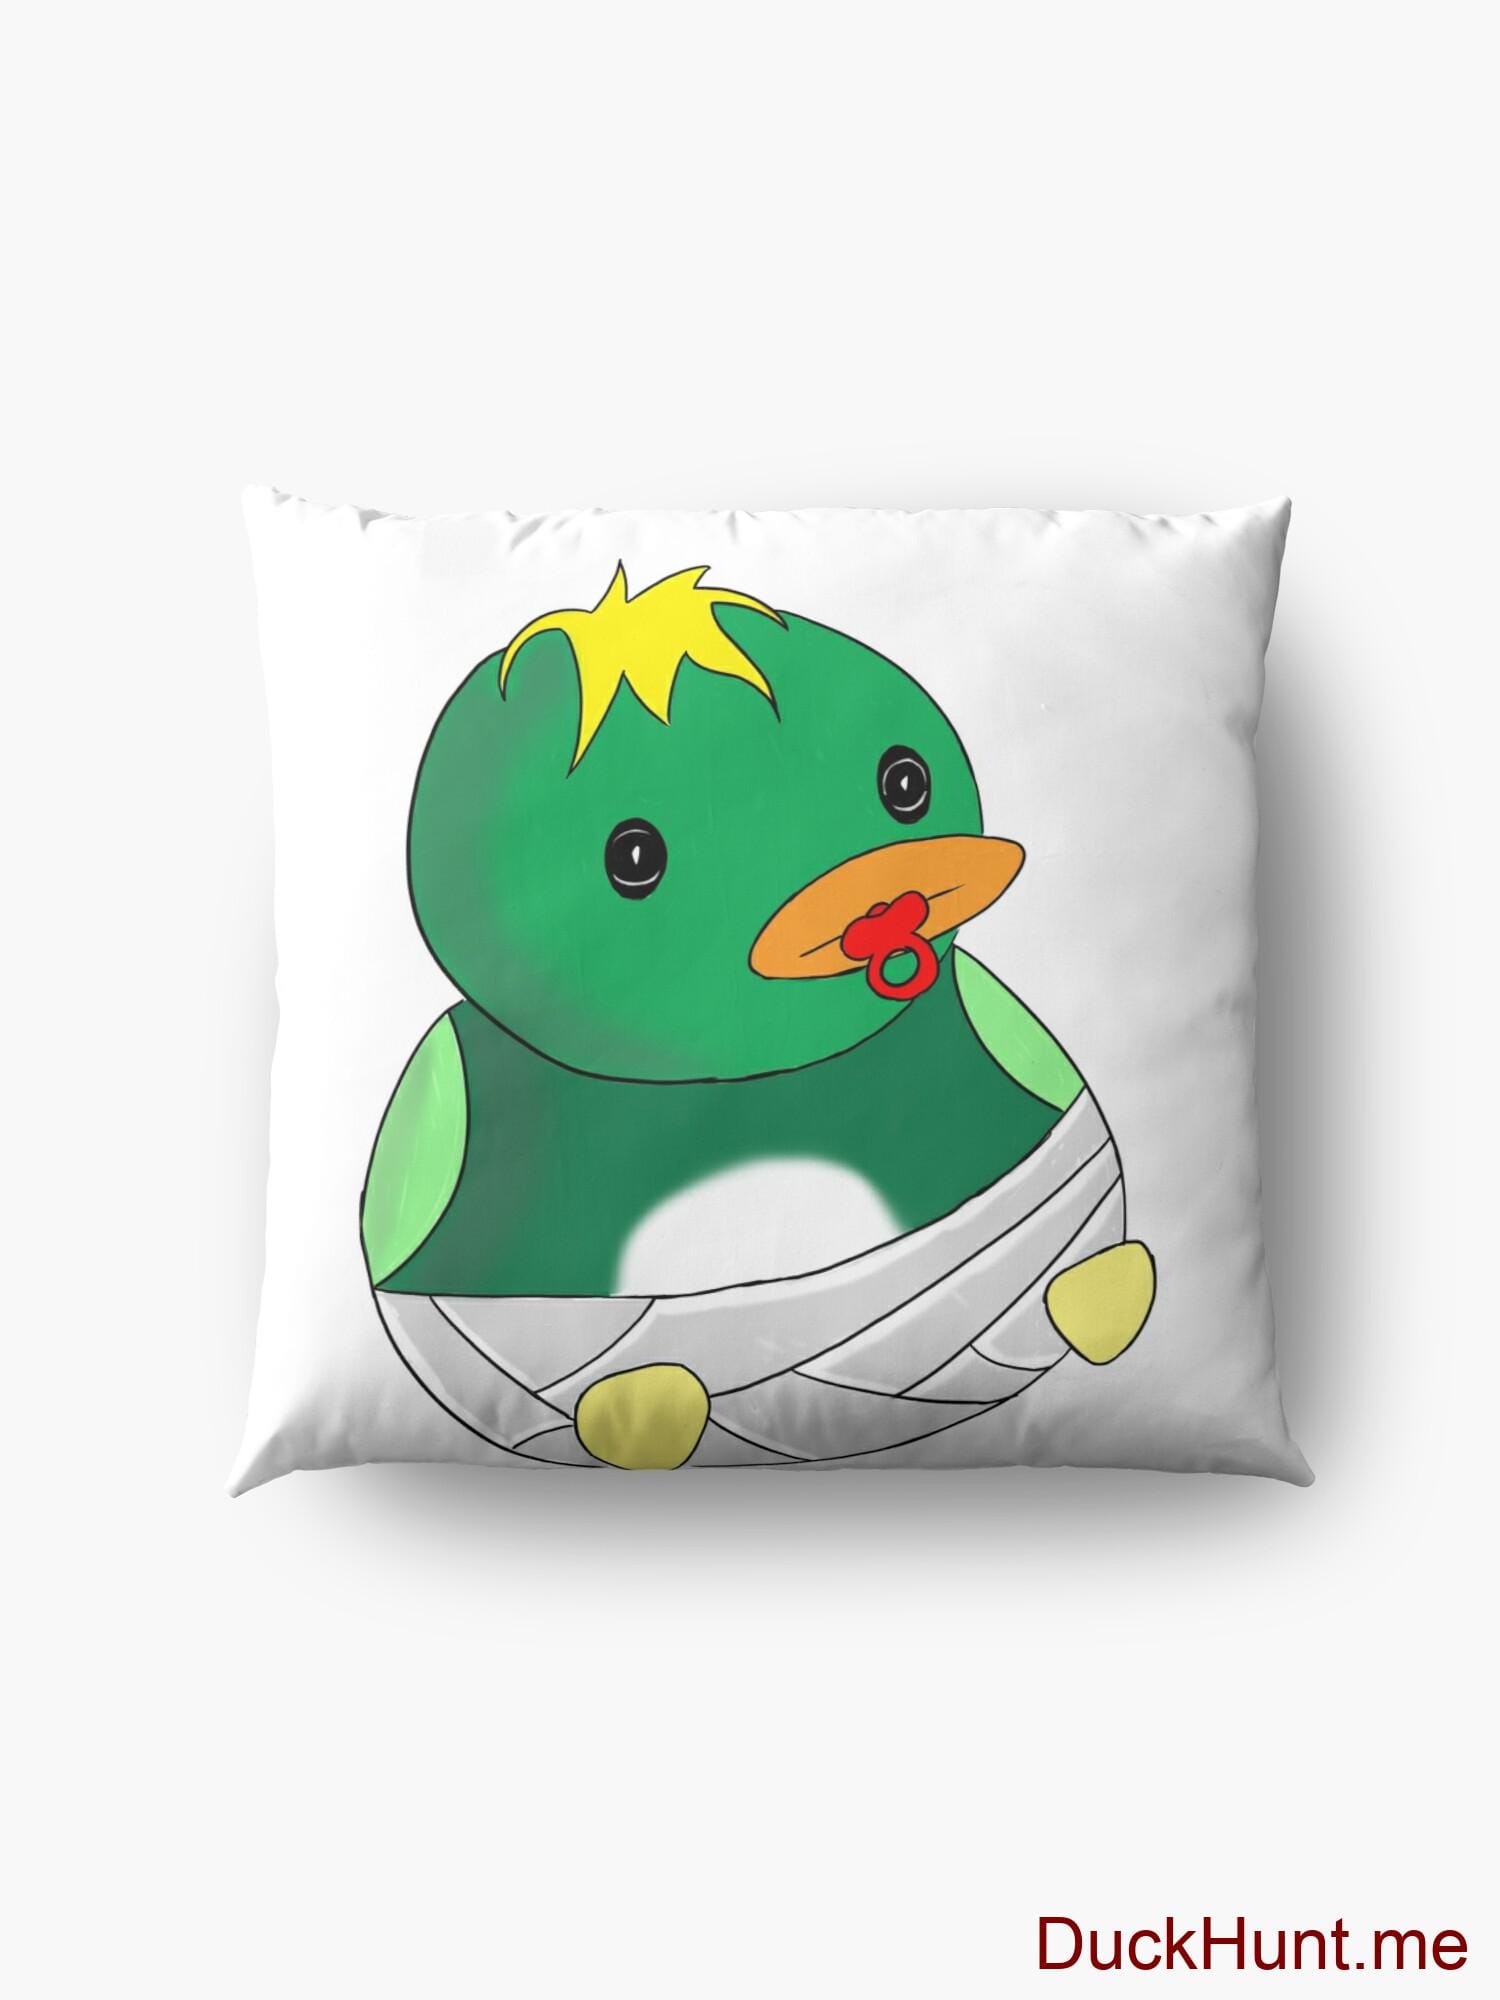 Baby duck Floor Pillow alternative image 4